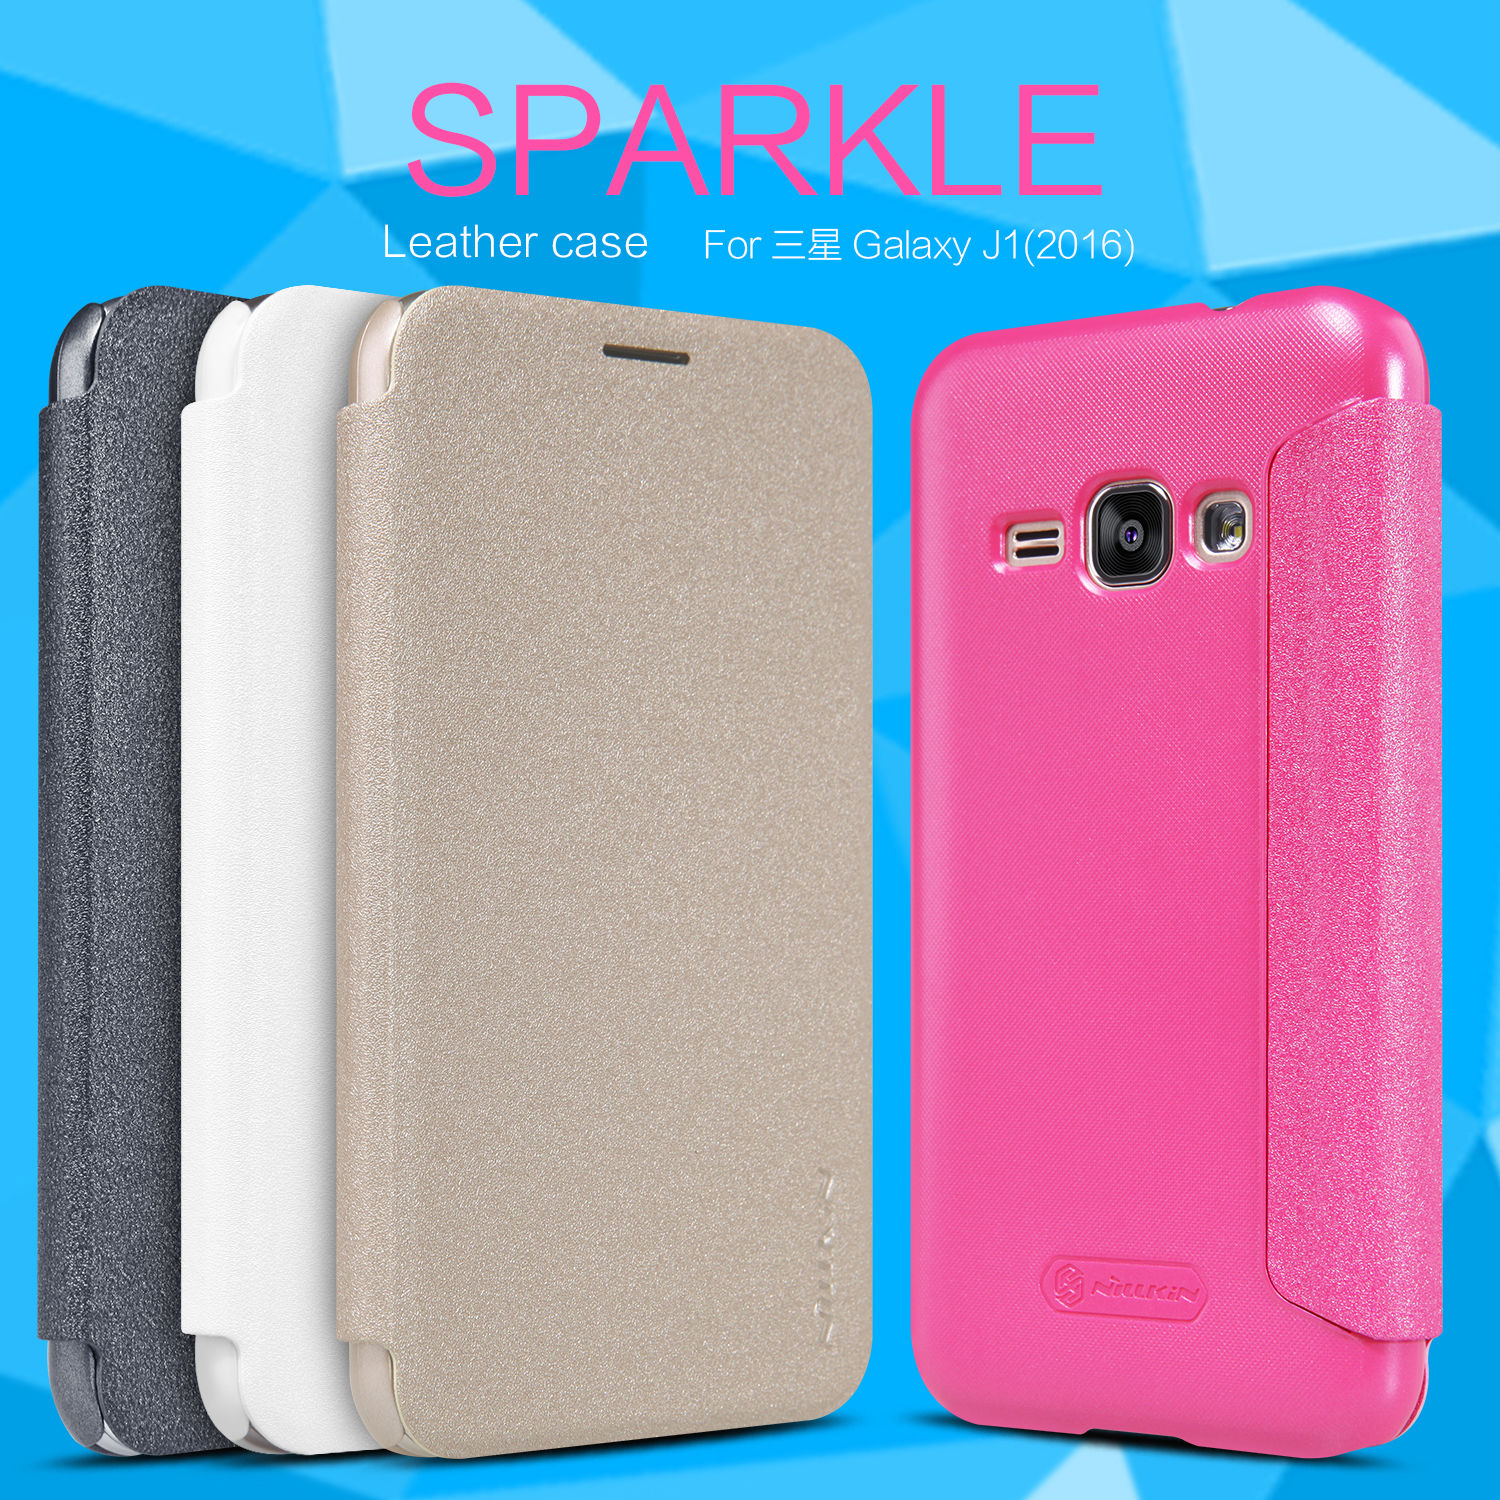 Bao Da Samsung Galaxy J1 2016 Nillkin Sparkle chính hãng Nillkin làm bằng chất liệu da và nhựa cao cấp bảo vệ tốt chống trầy xước va đập